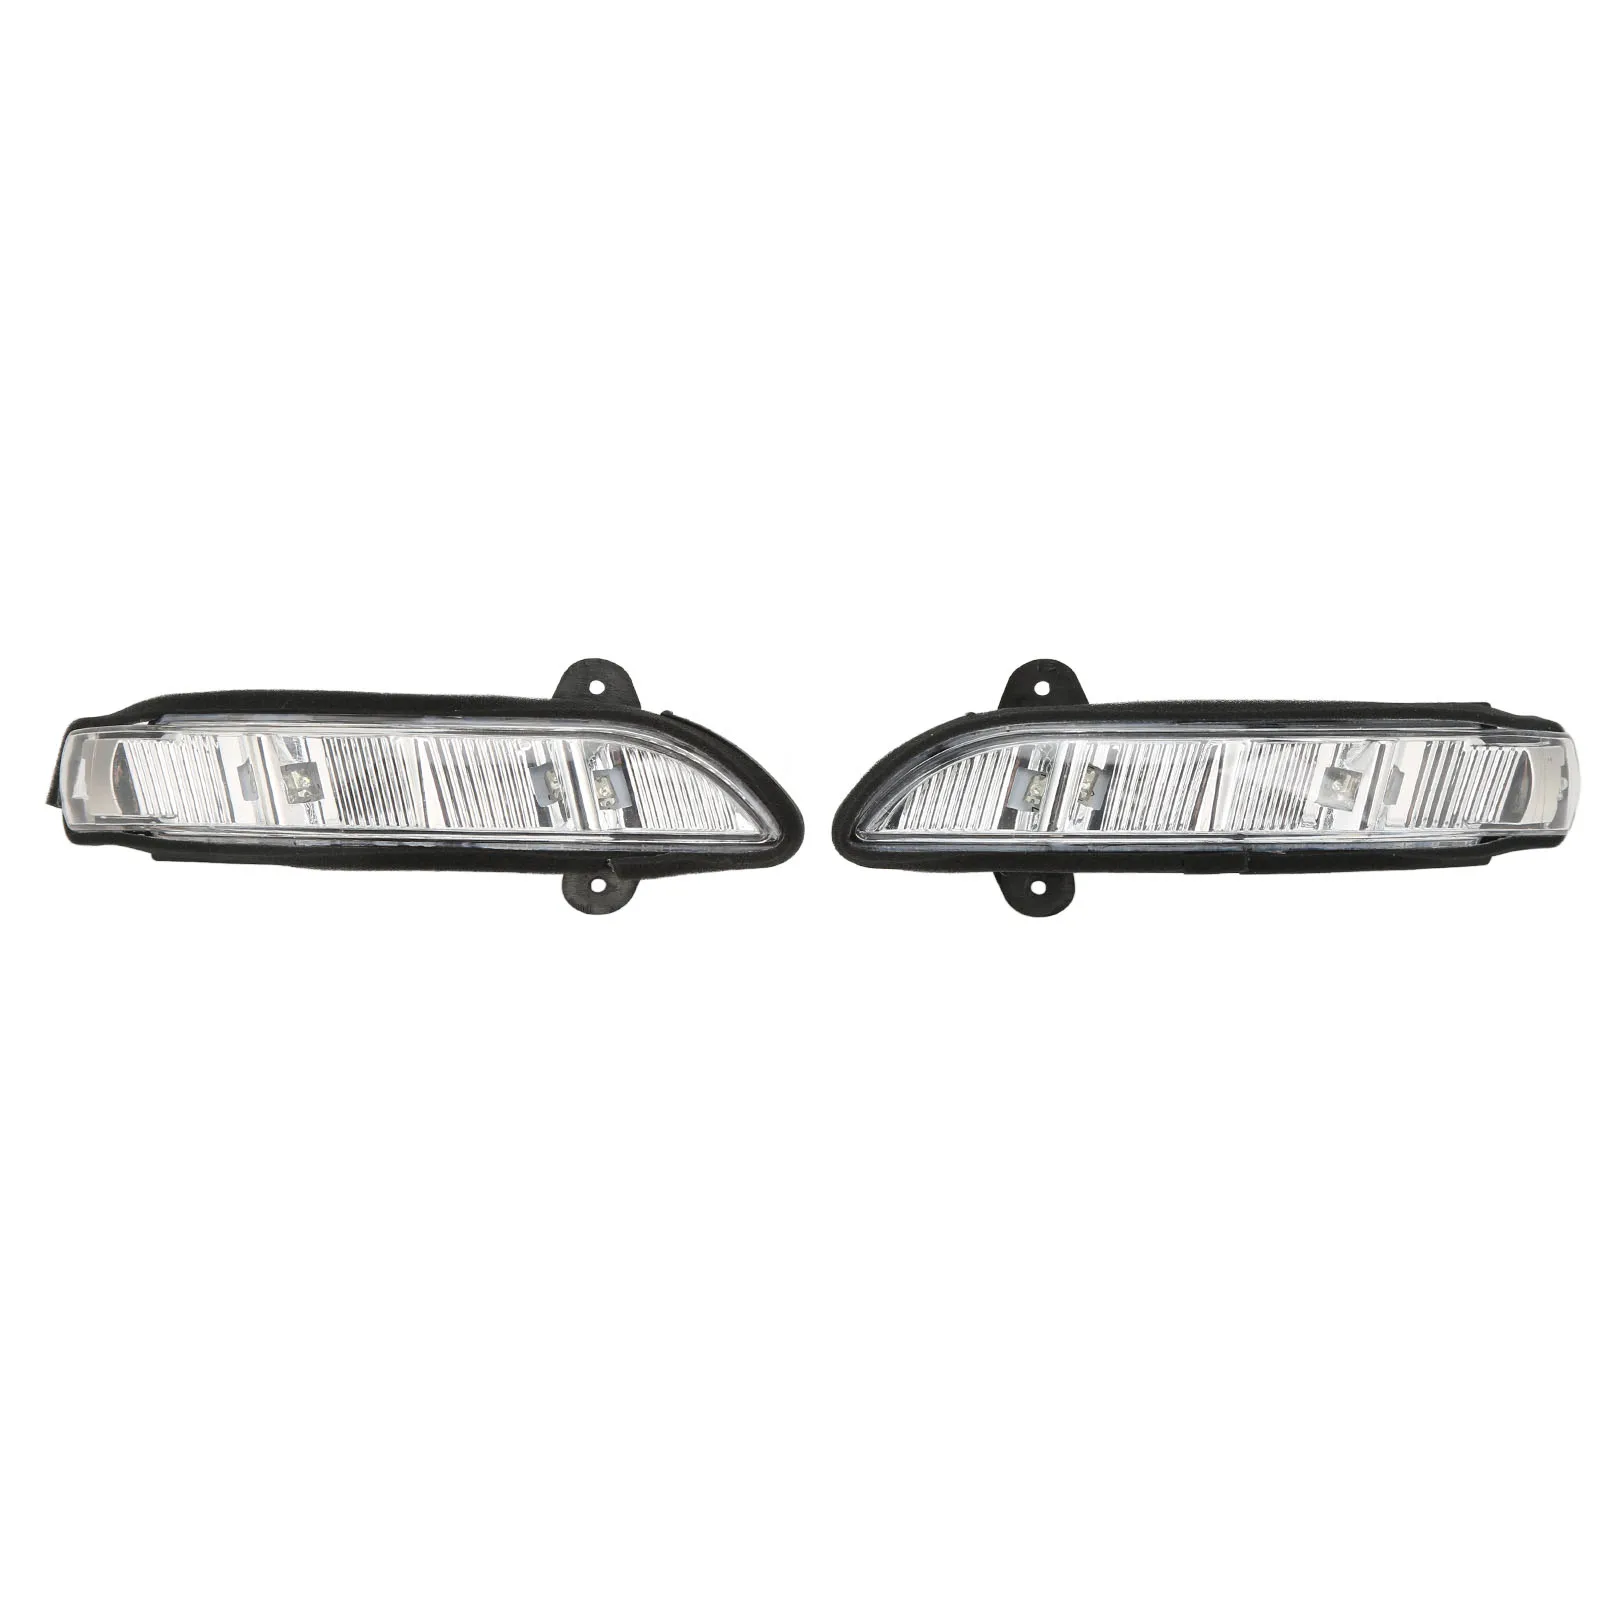 Габаритный фонарь 2198200521 Сигнальная лампа для зеркала заднего вида, Износостойкий A2198200621, левый и правый, прочный, простая установка для автомобиля